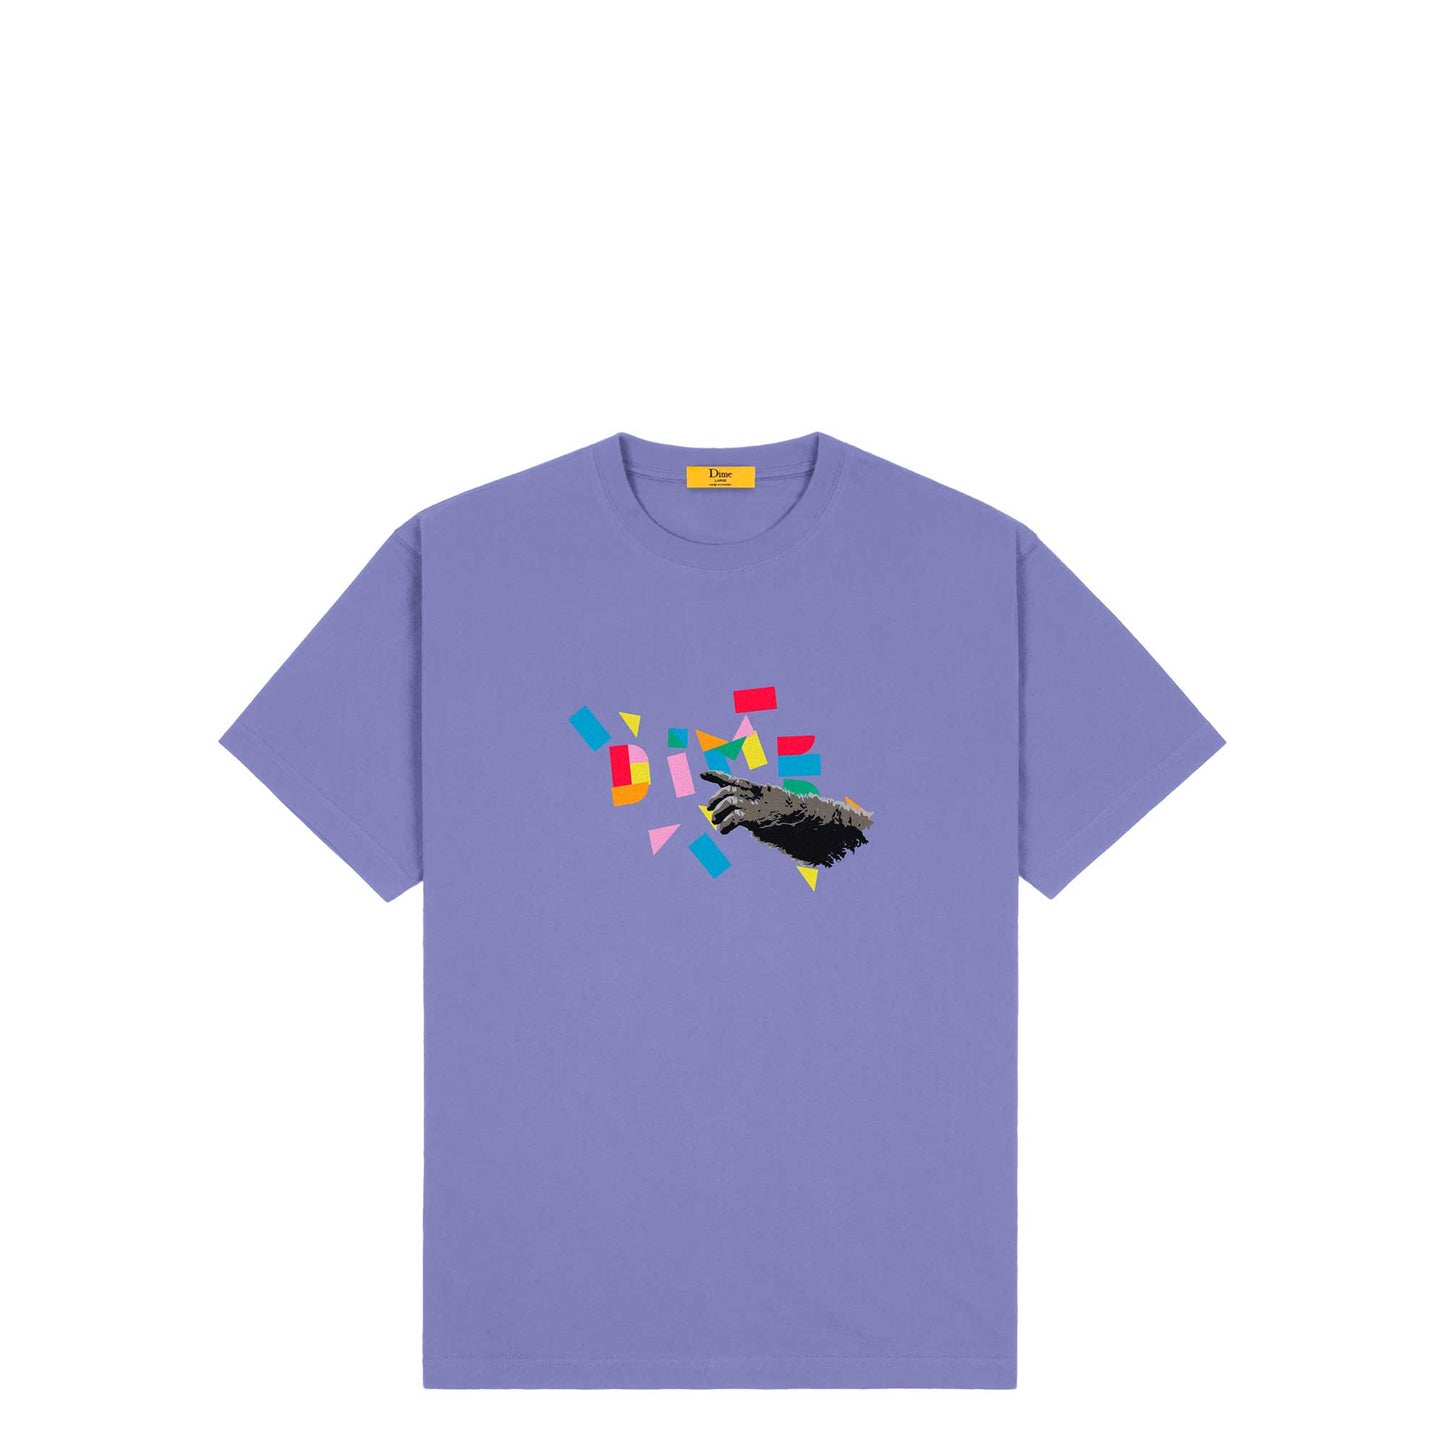 Dime Koko T-shirt, velvet purple - Tiki Room Skateboards - 1